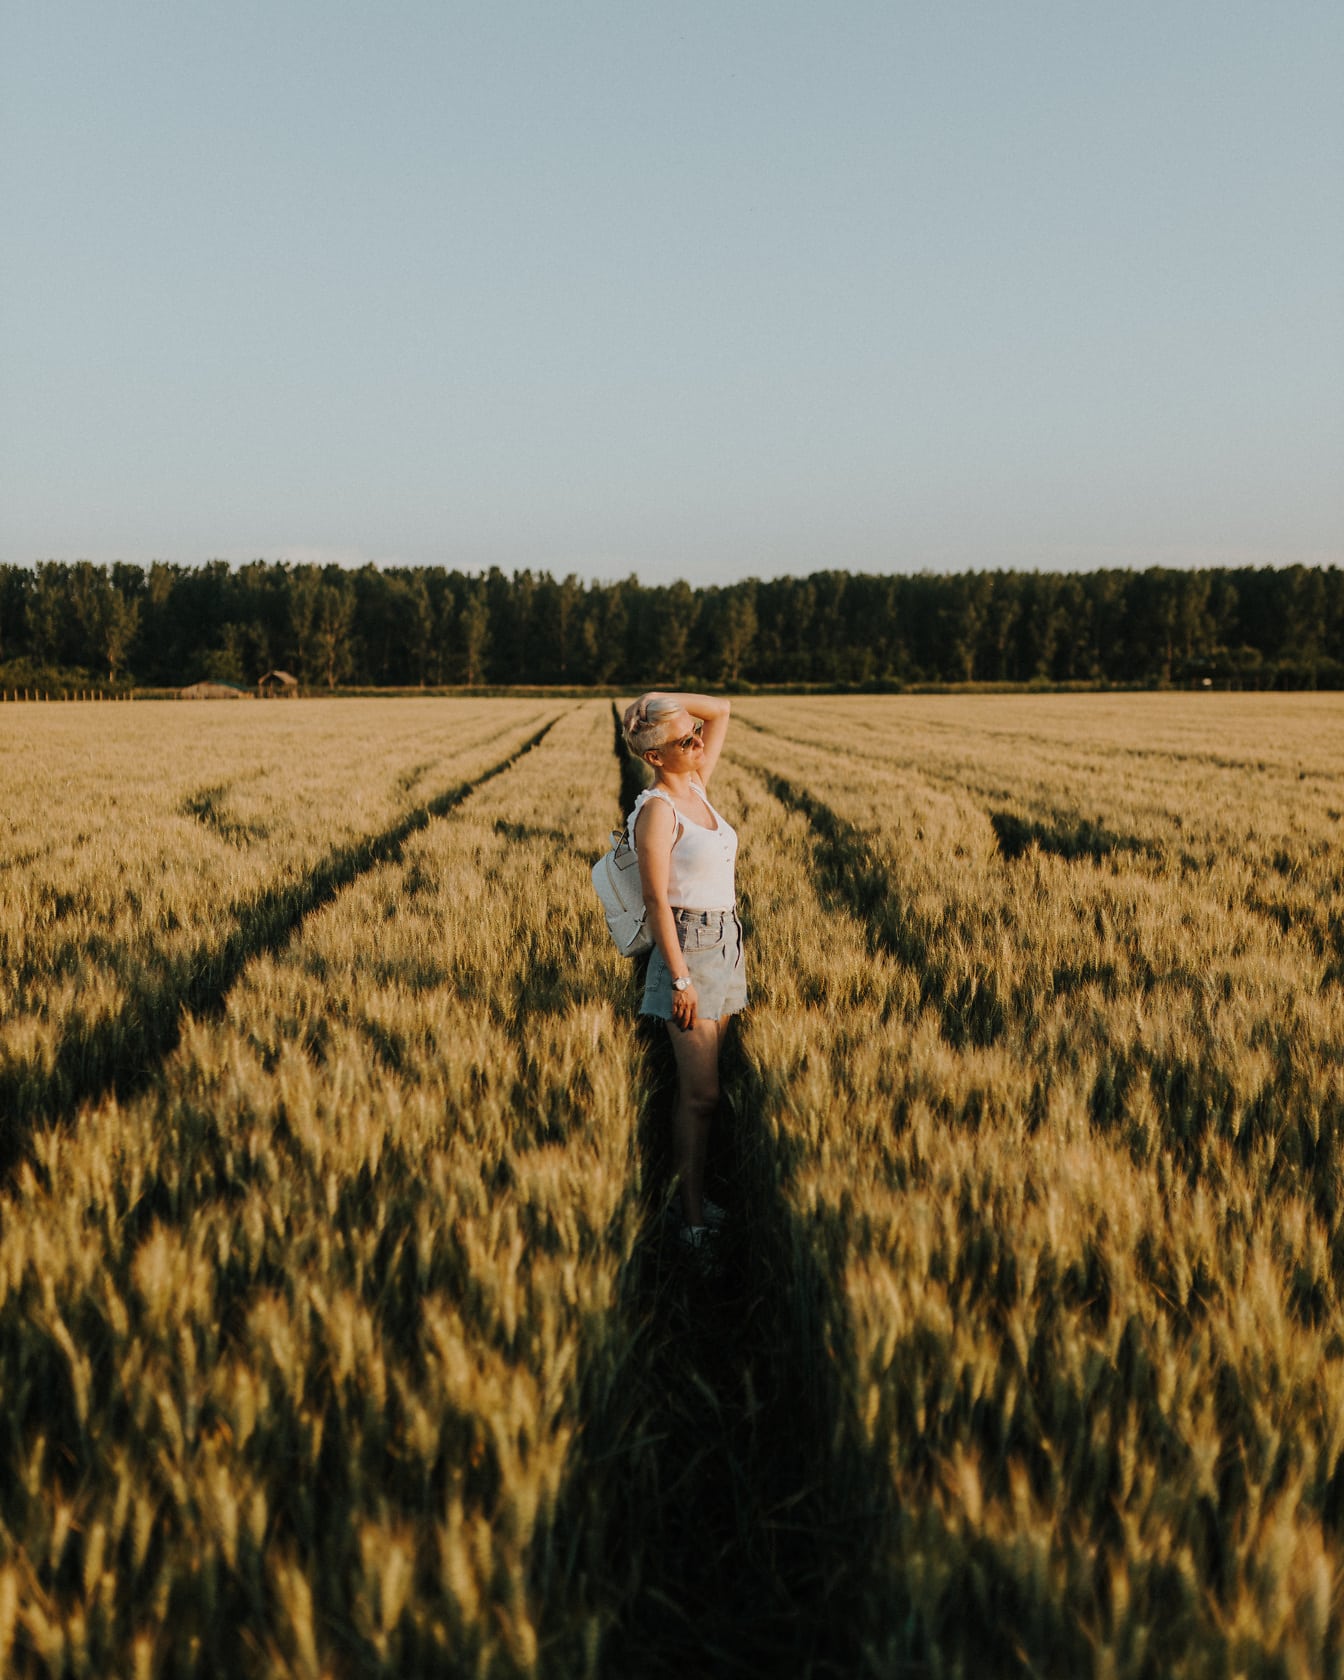 Wanita kurus tampan berpose di ladang gandum